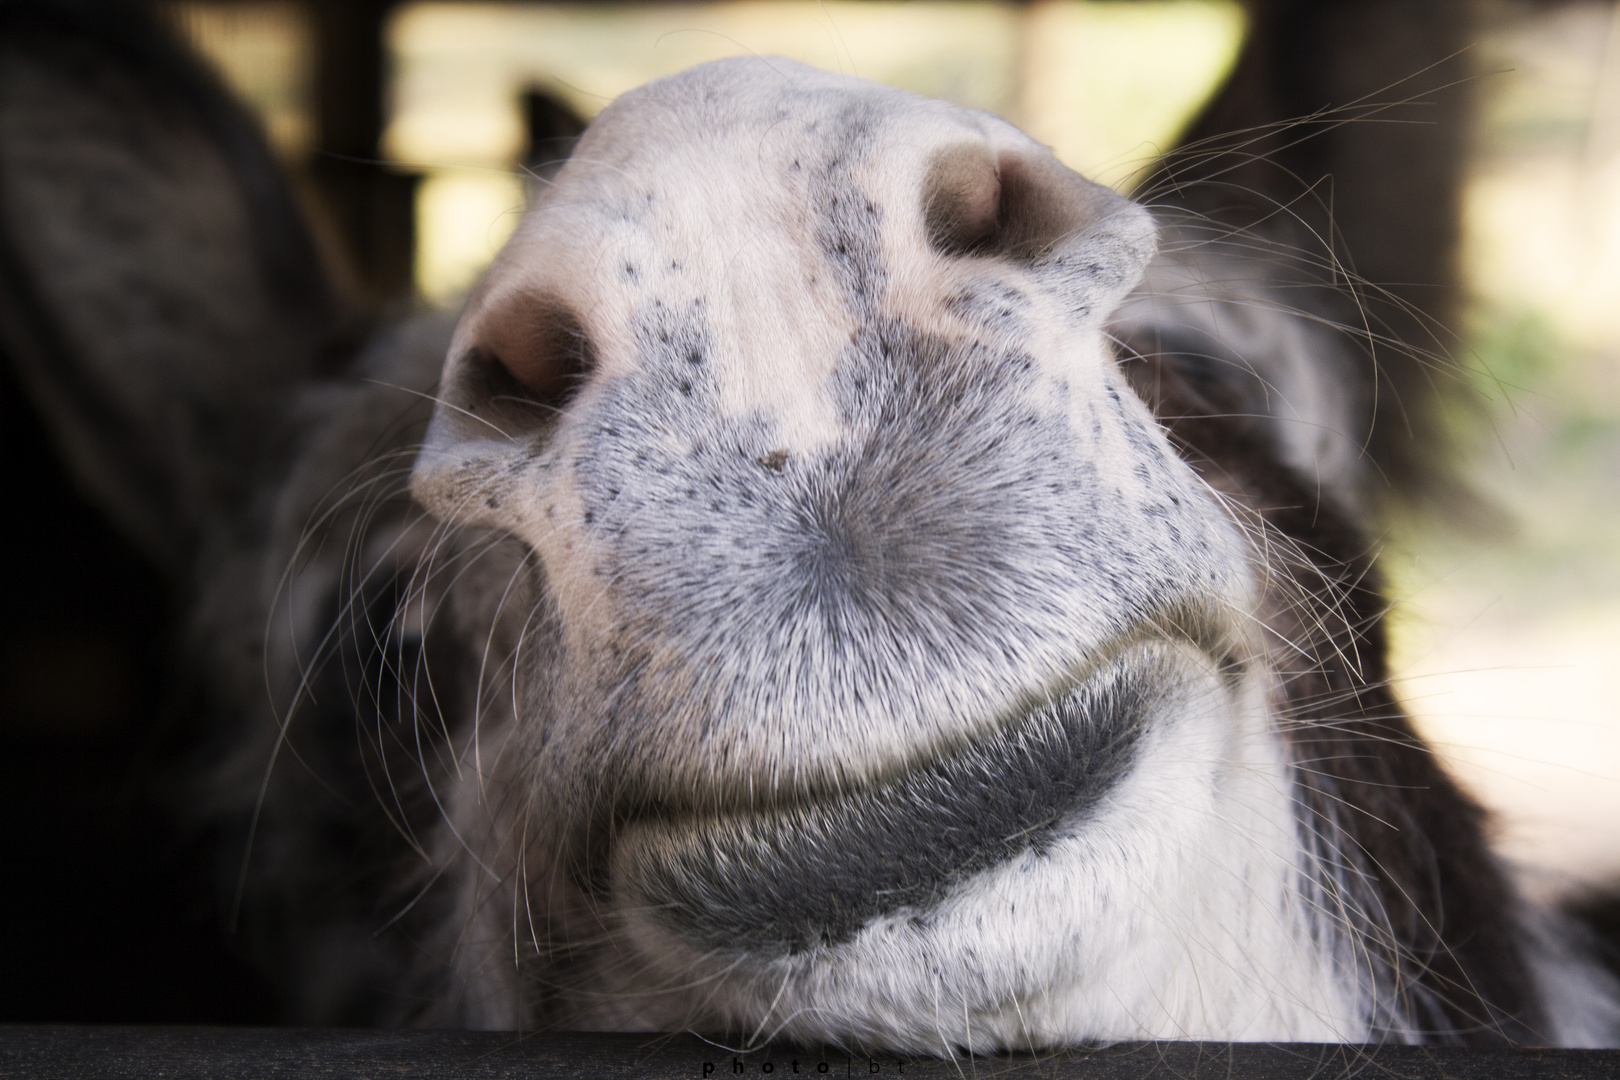 the donkey smile